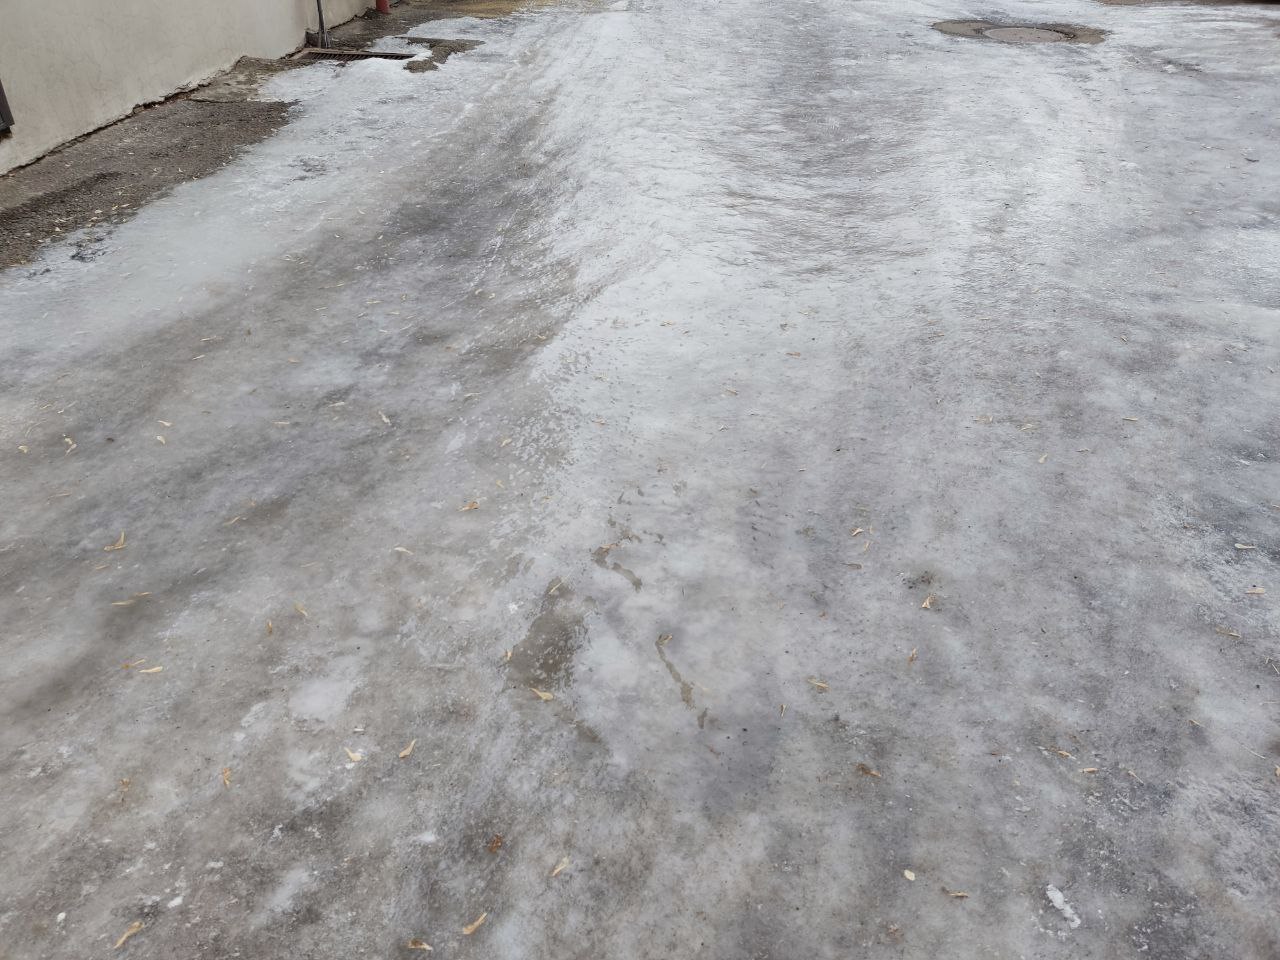 Сплошной лед во дворе на Ленина. Управляшка забыла о своих обязанностях